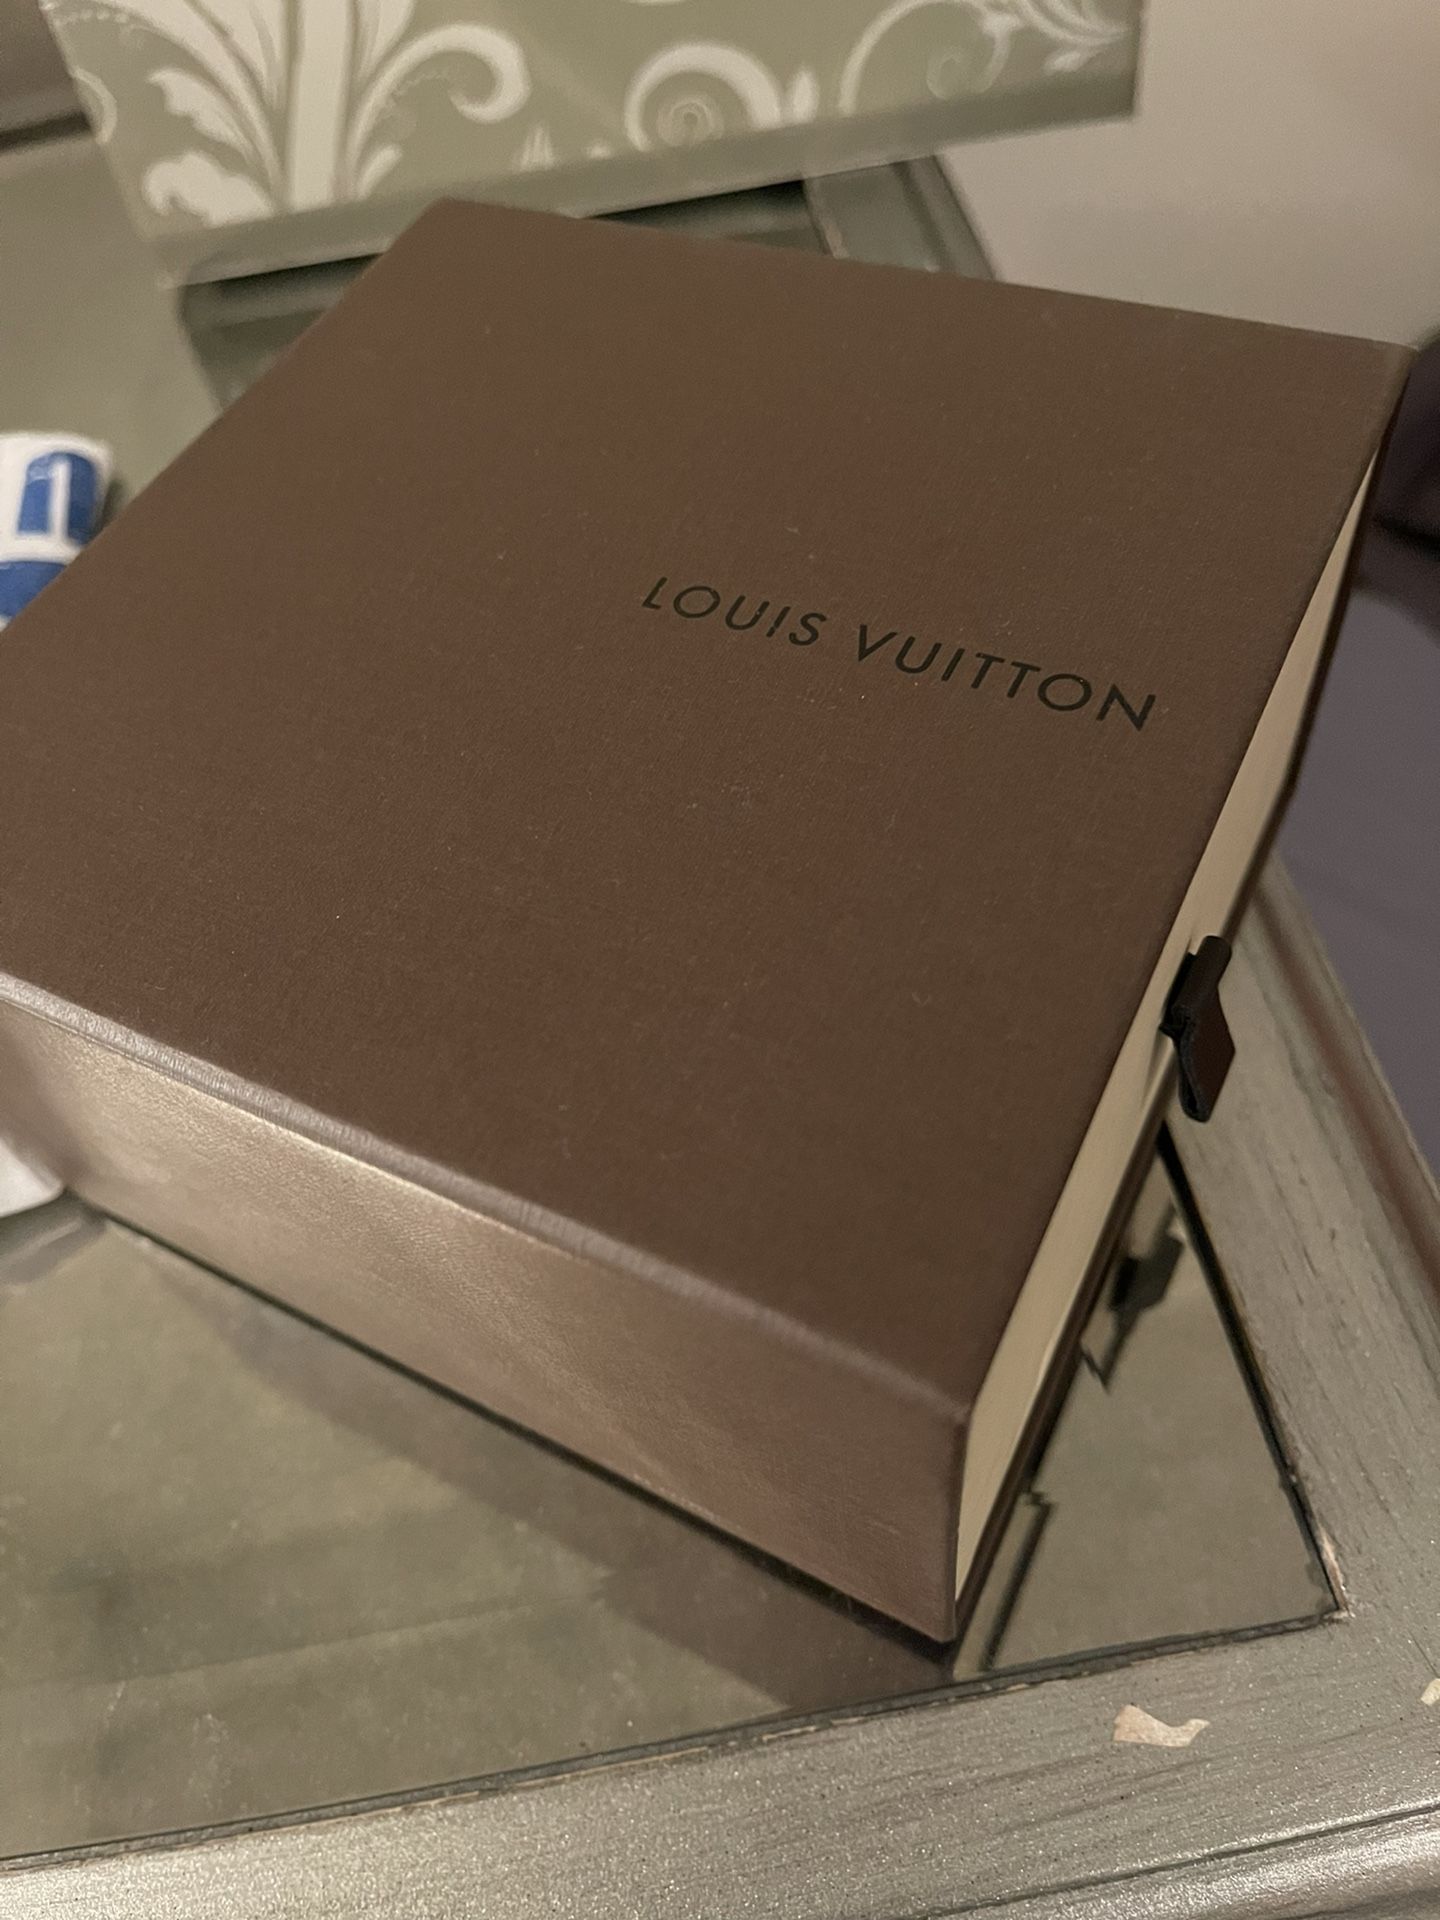 Louis Vuitton Inventeur Damier Graphite Reversible Belt - Black Belts,  Accessories - LOU117891